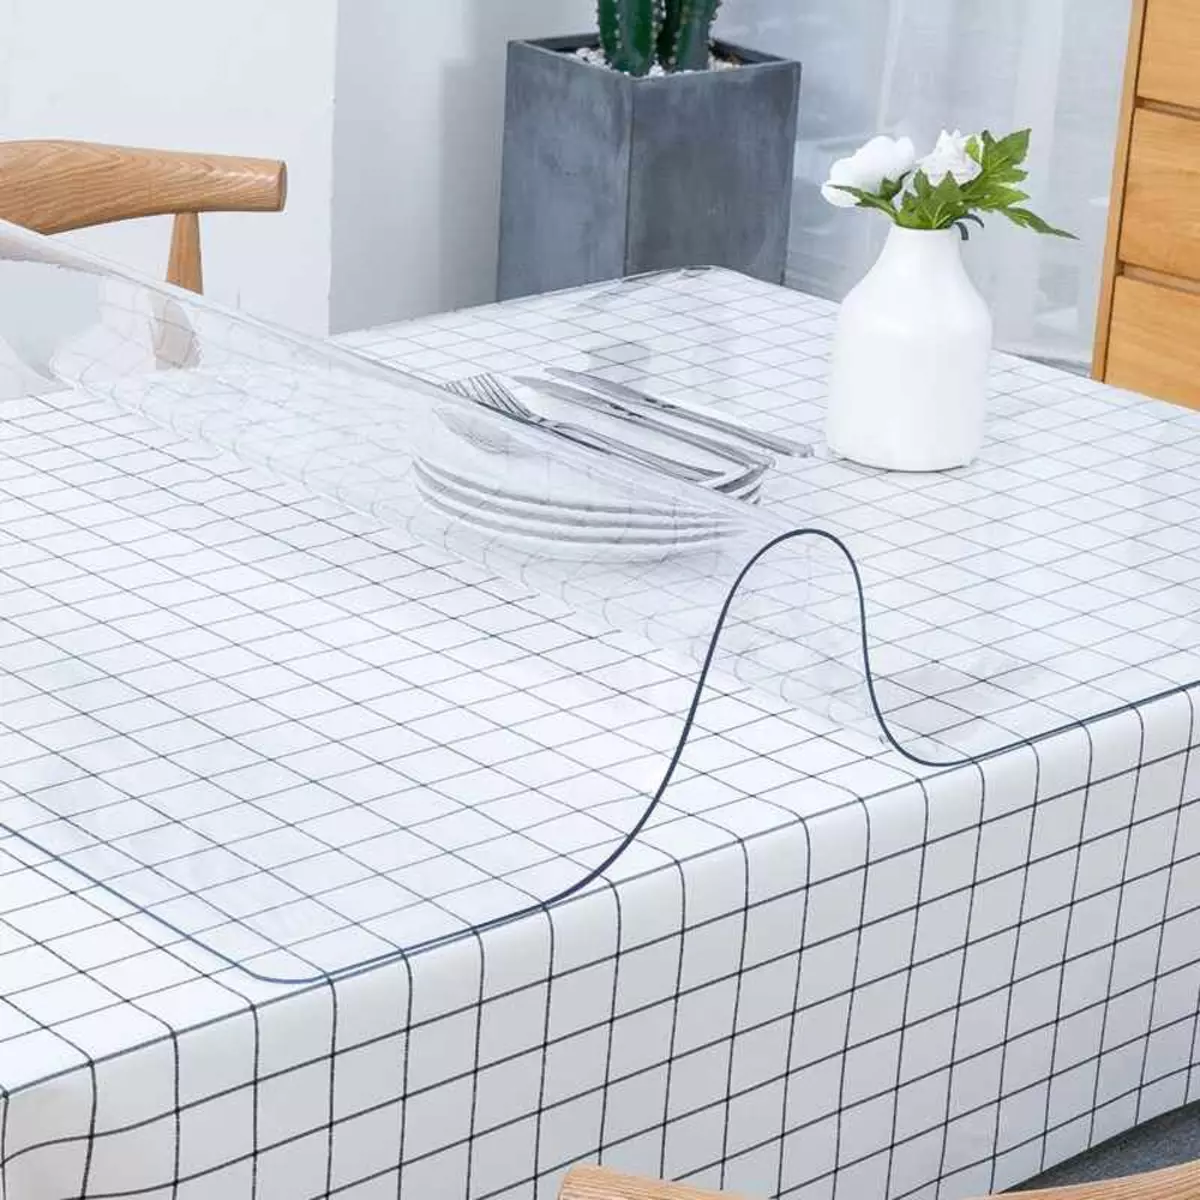 Toalhas de mesa PVC: transparente para tabela e openwork, redondo e oval. O que é isso? Seleção de toalhas de mesa com revestimento de polietileno em uma base tecidual 21596_28